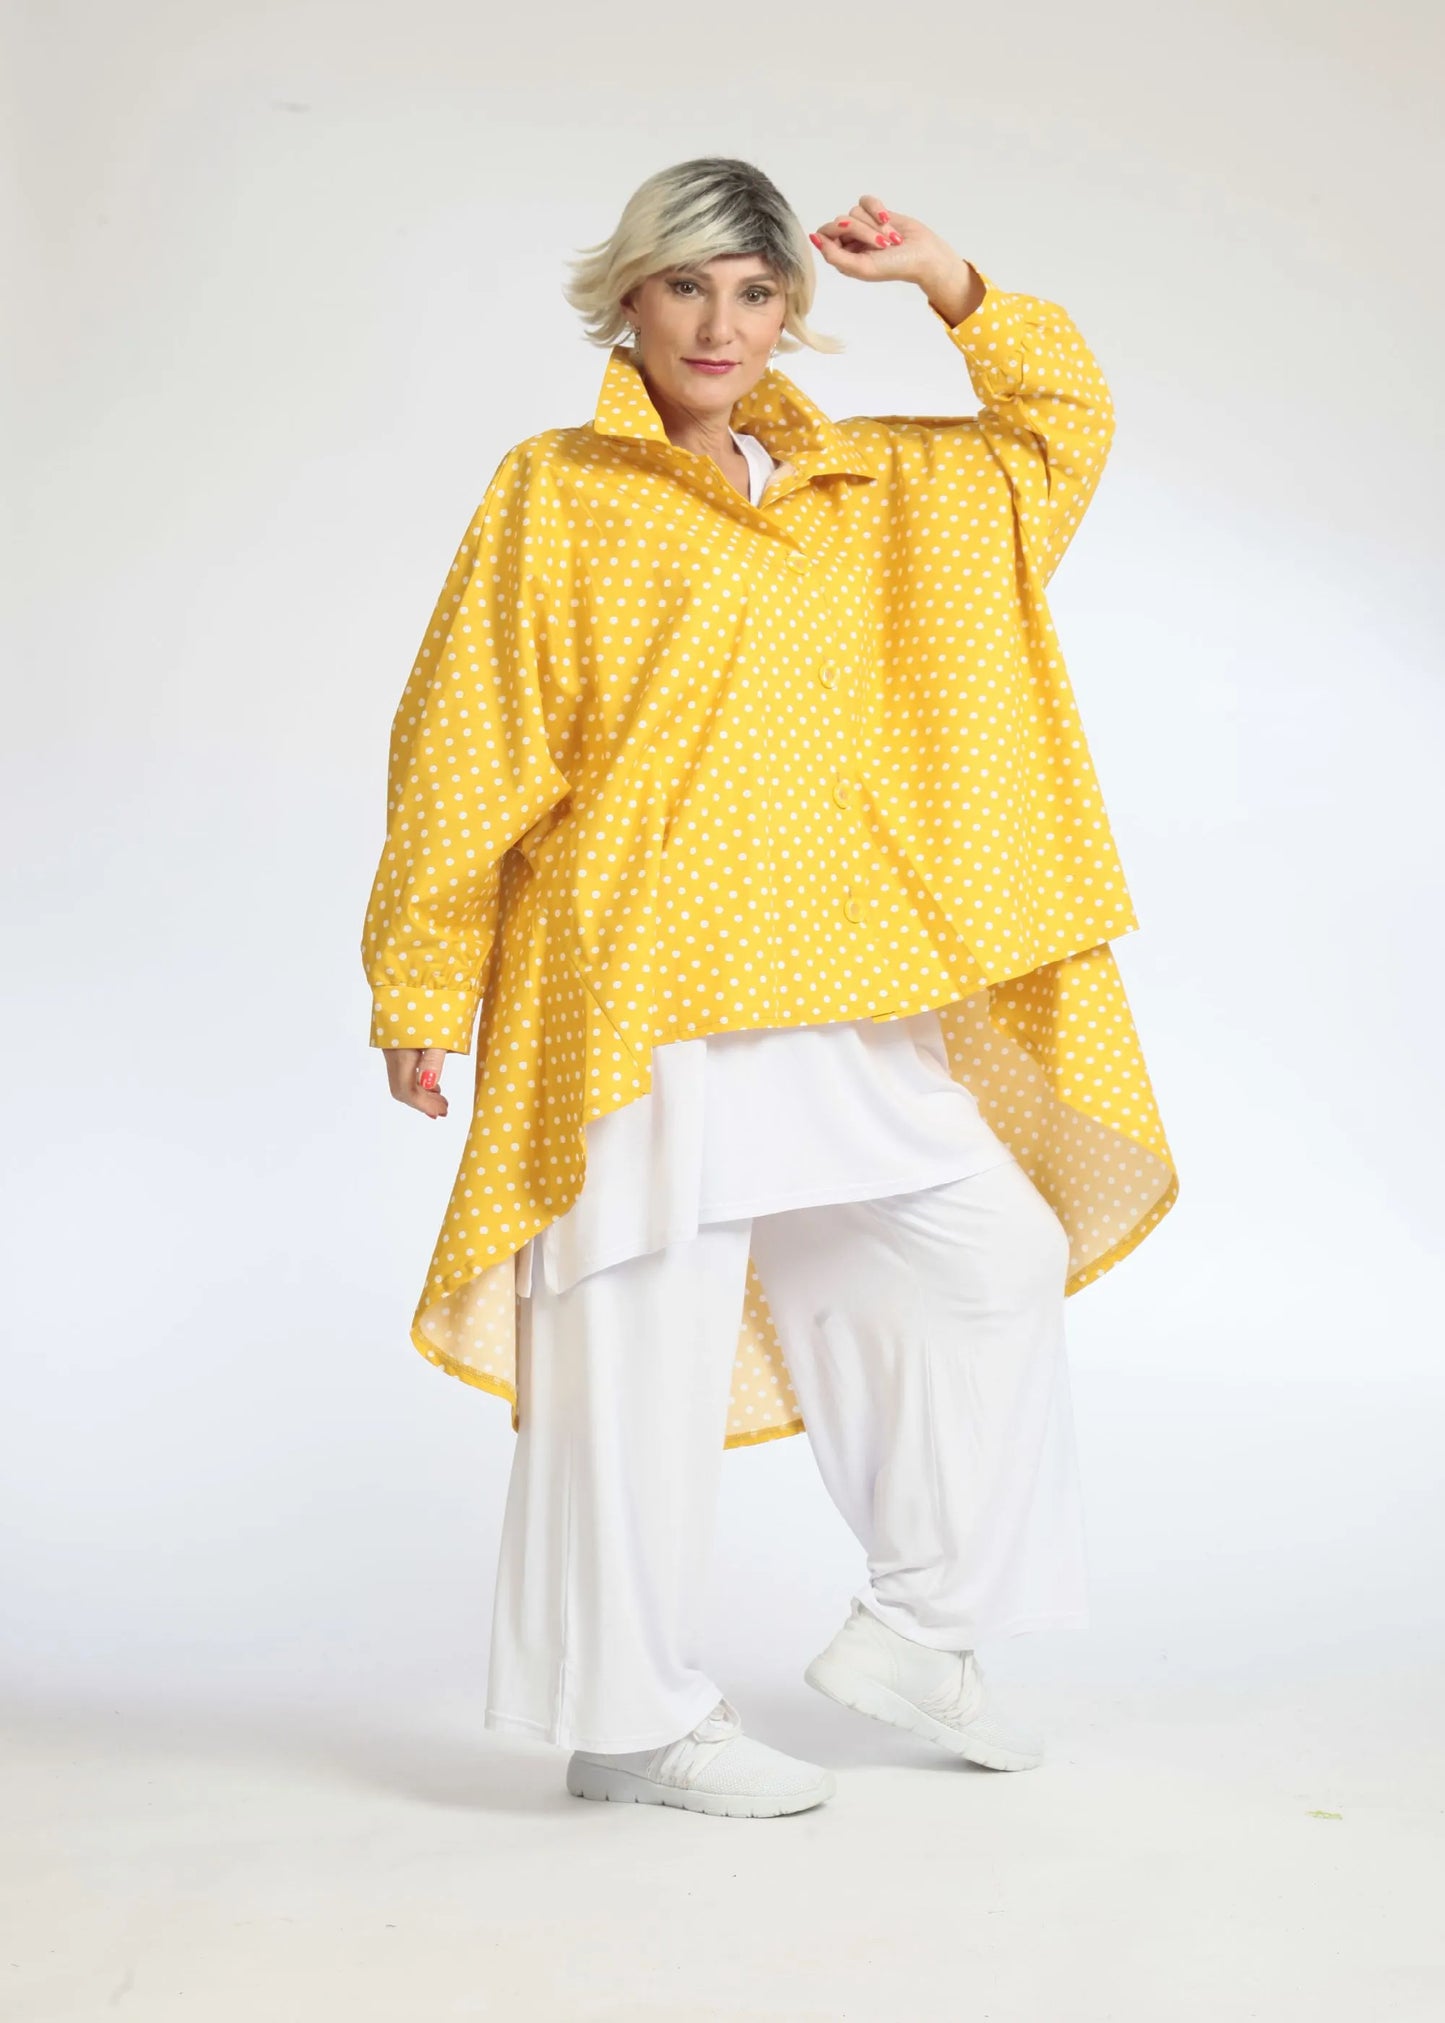 Sommer Bluse in Vokuhila Form aus glatter Popeline Qualität, Freya in Gelb-Weiß